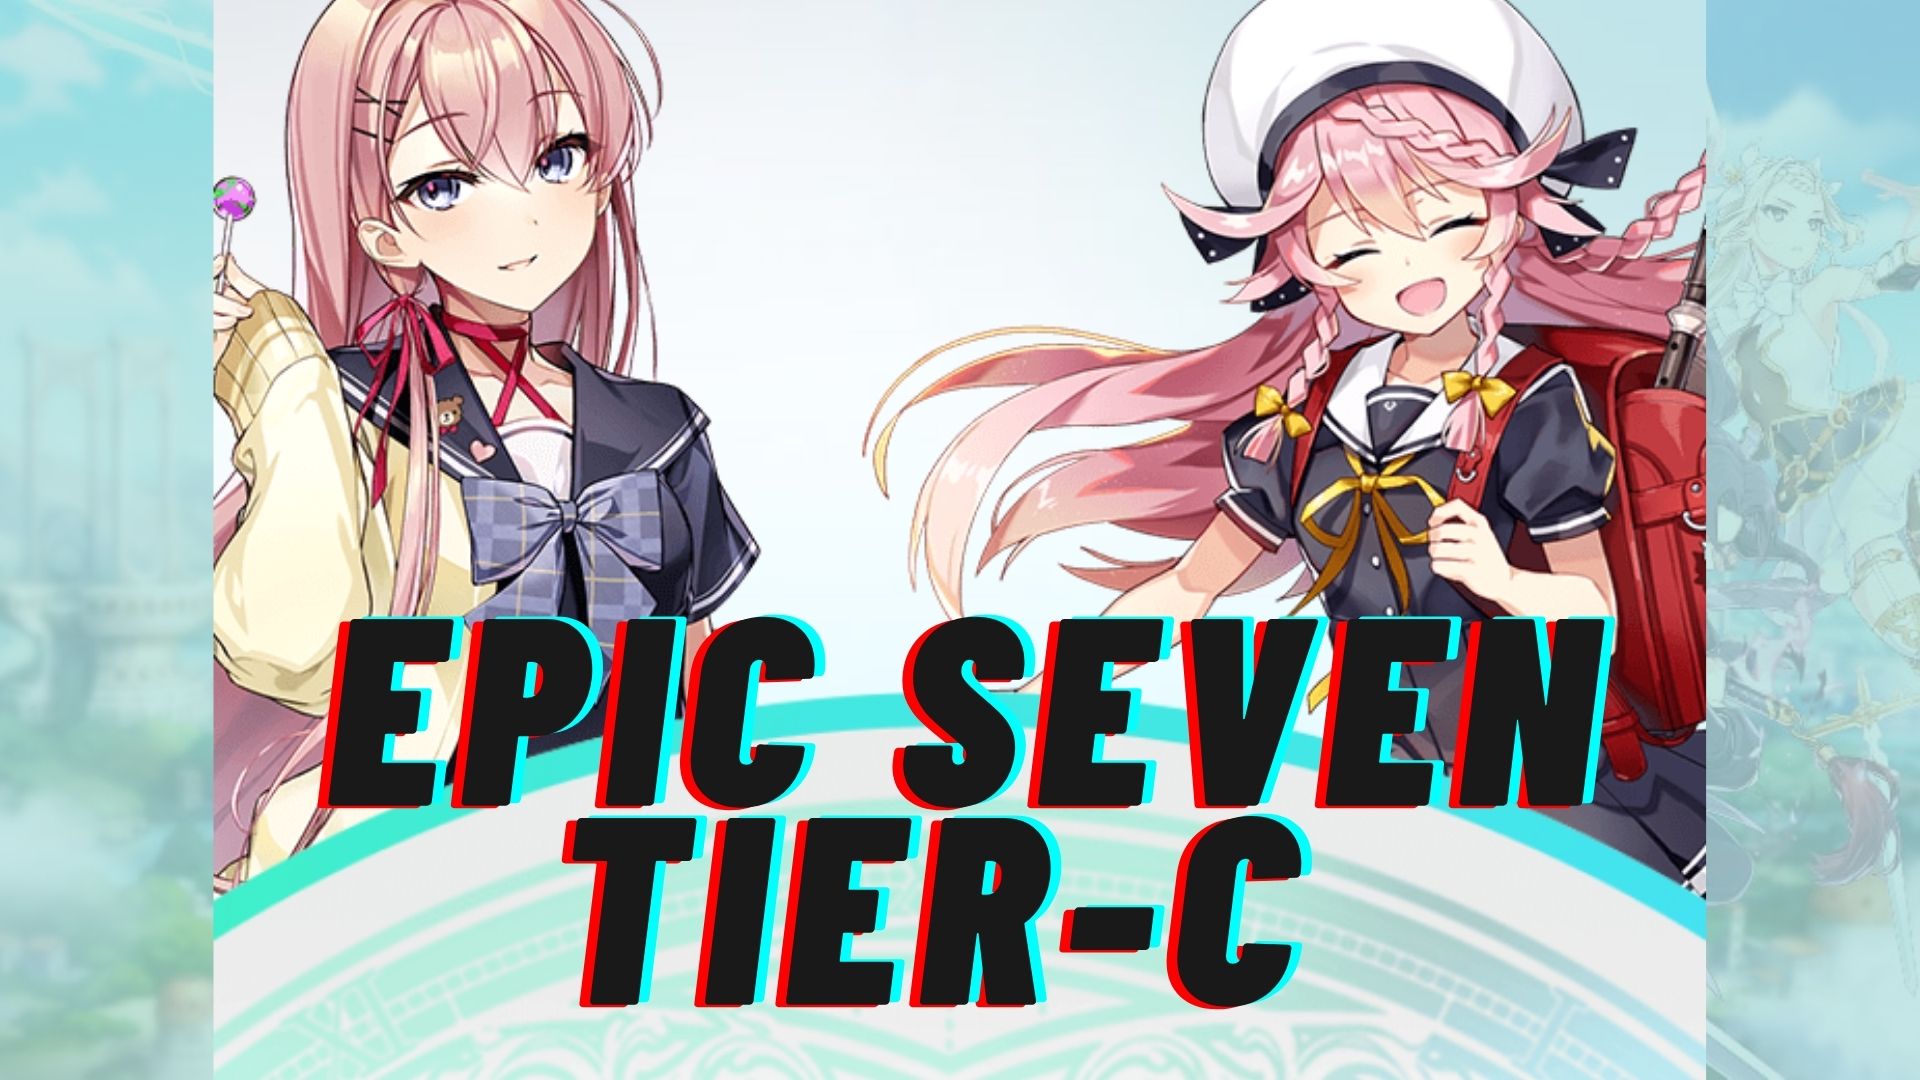 Epic Seven Tier List